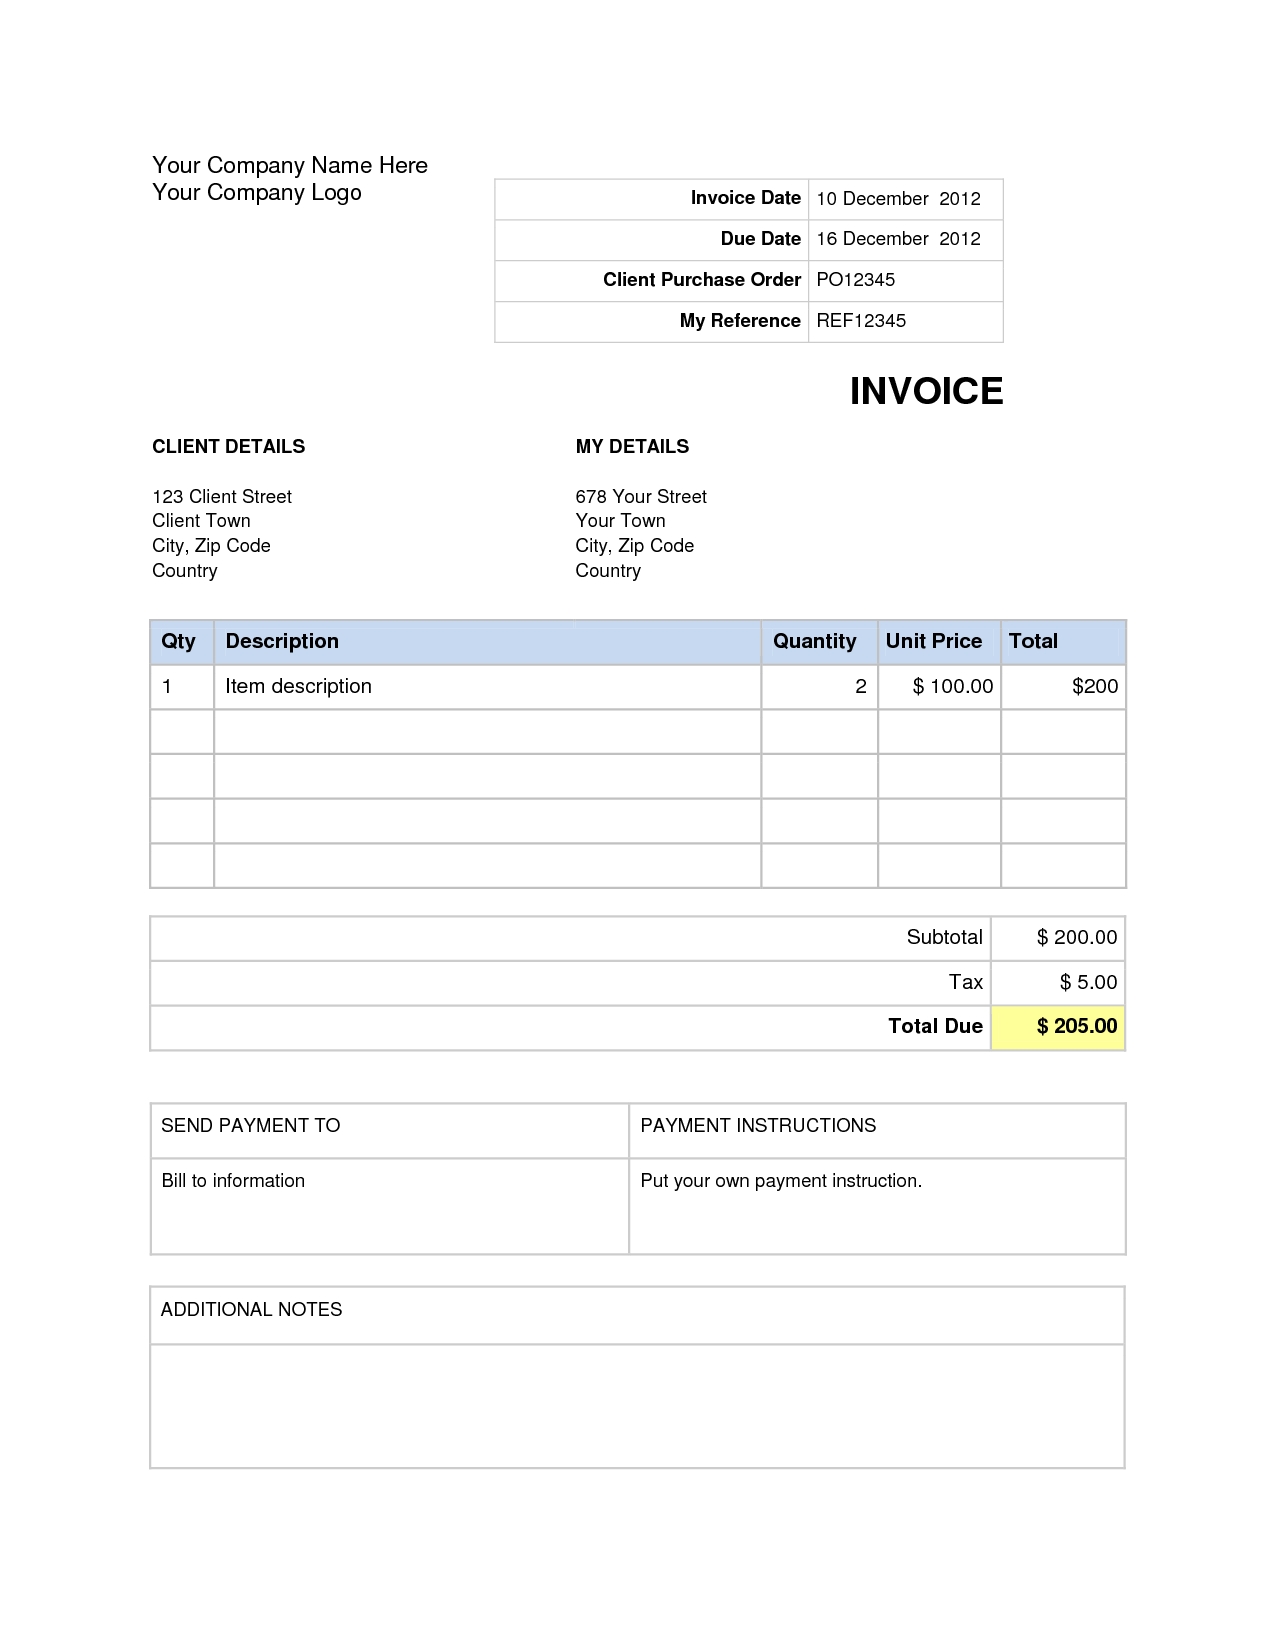 Invoice Template Uk For Mac - rhinoturki